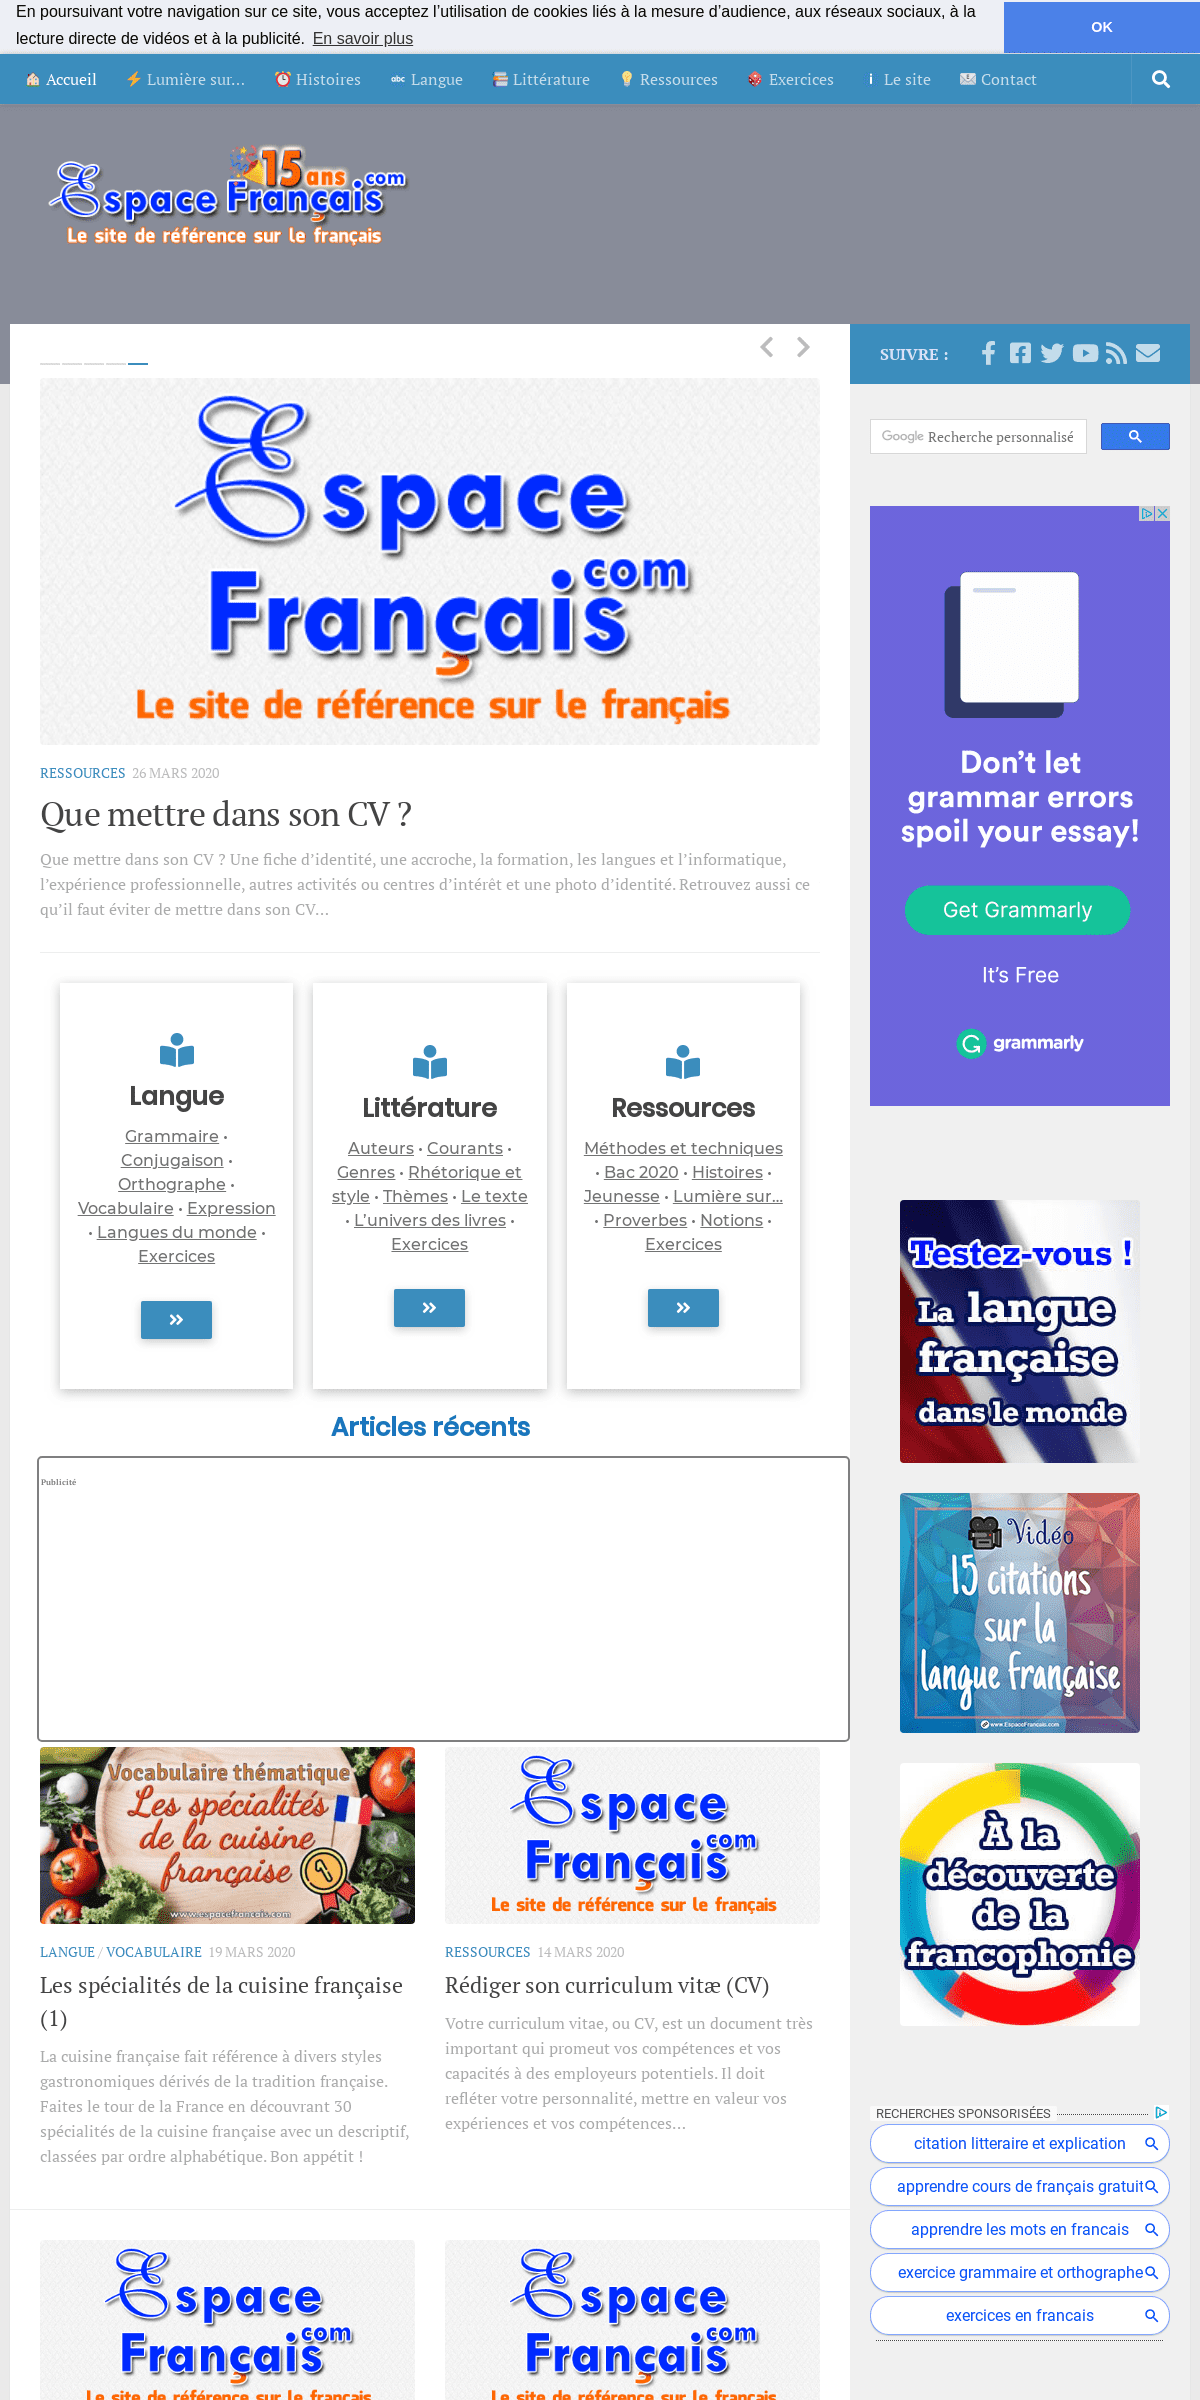 A complete backup of espacefrancais.com